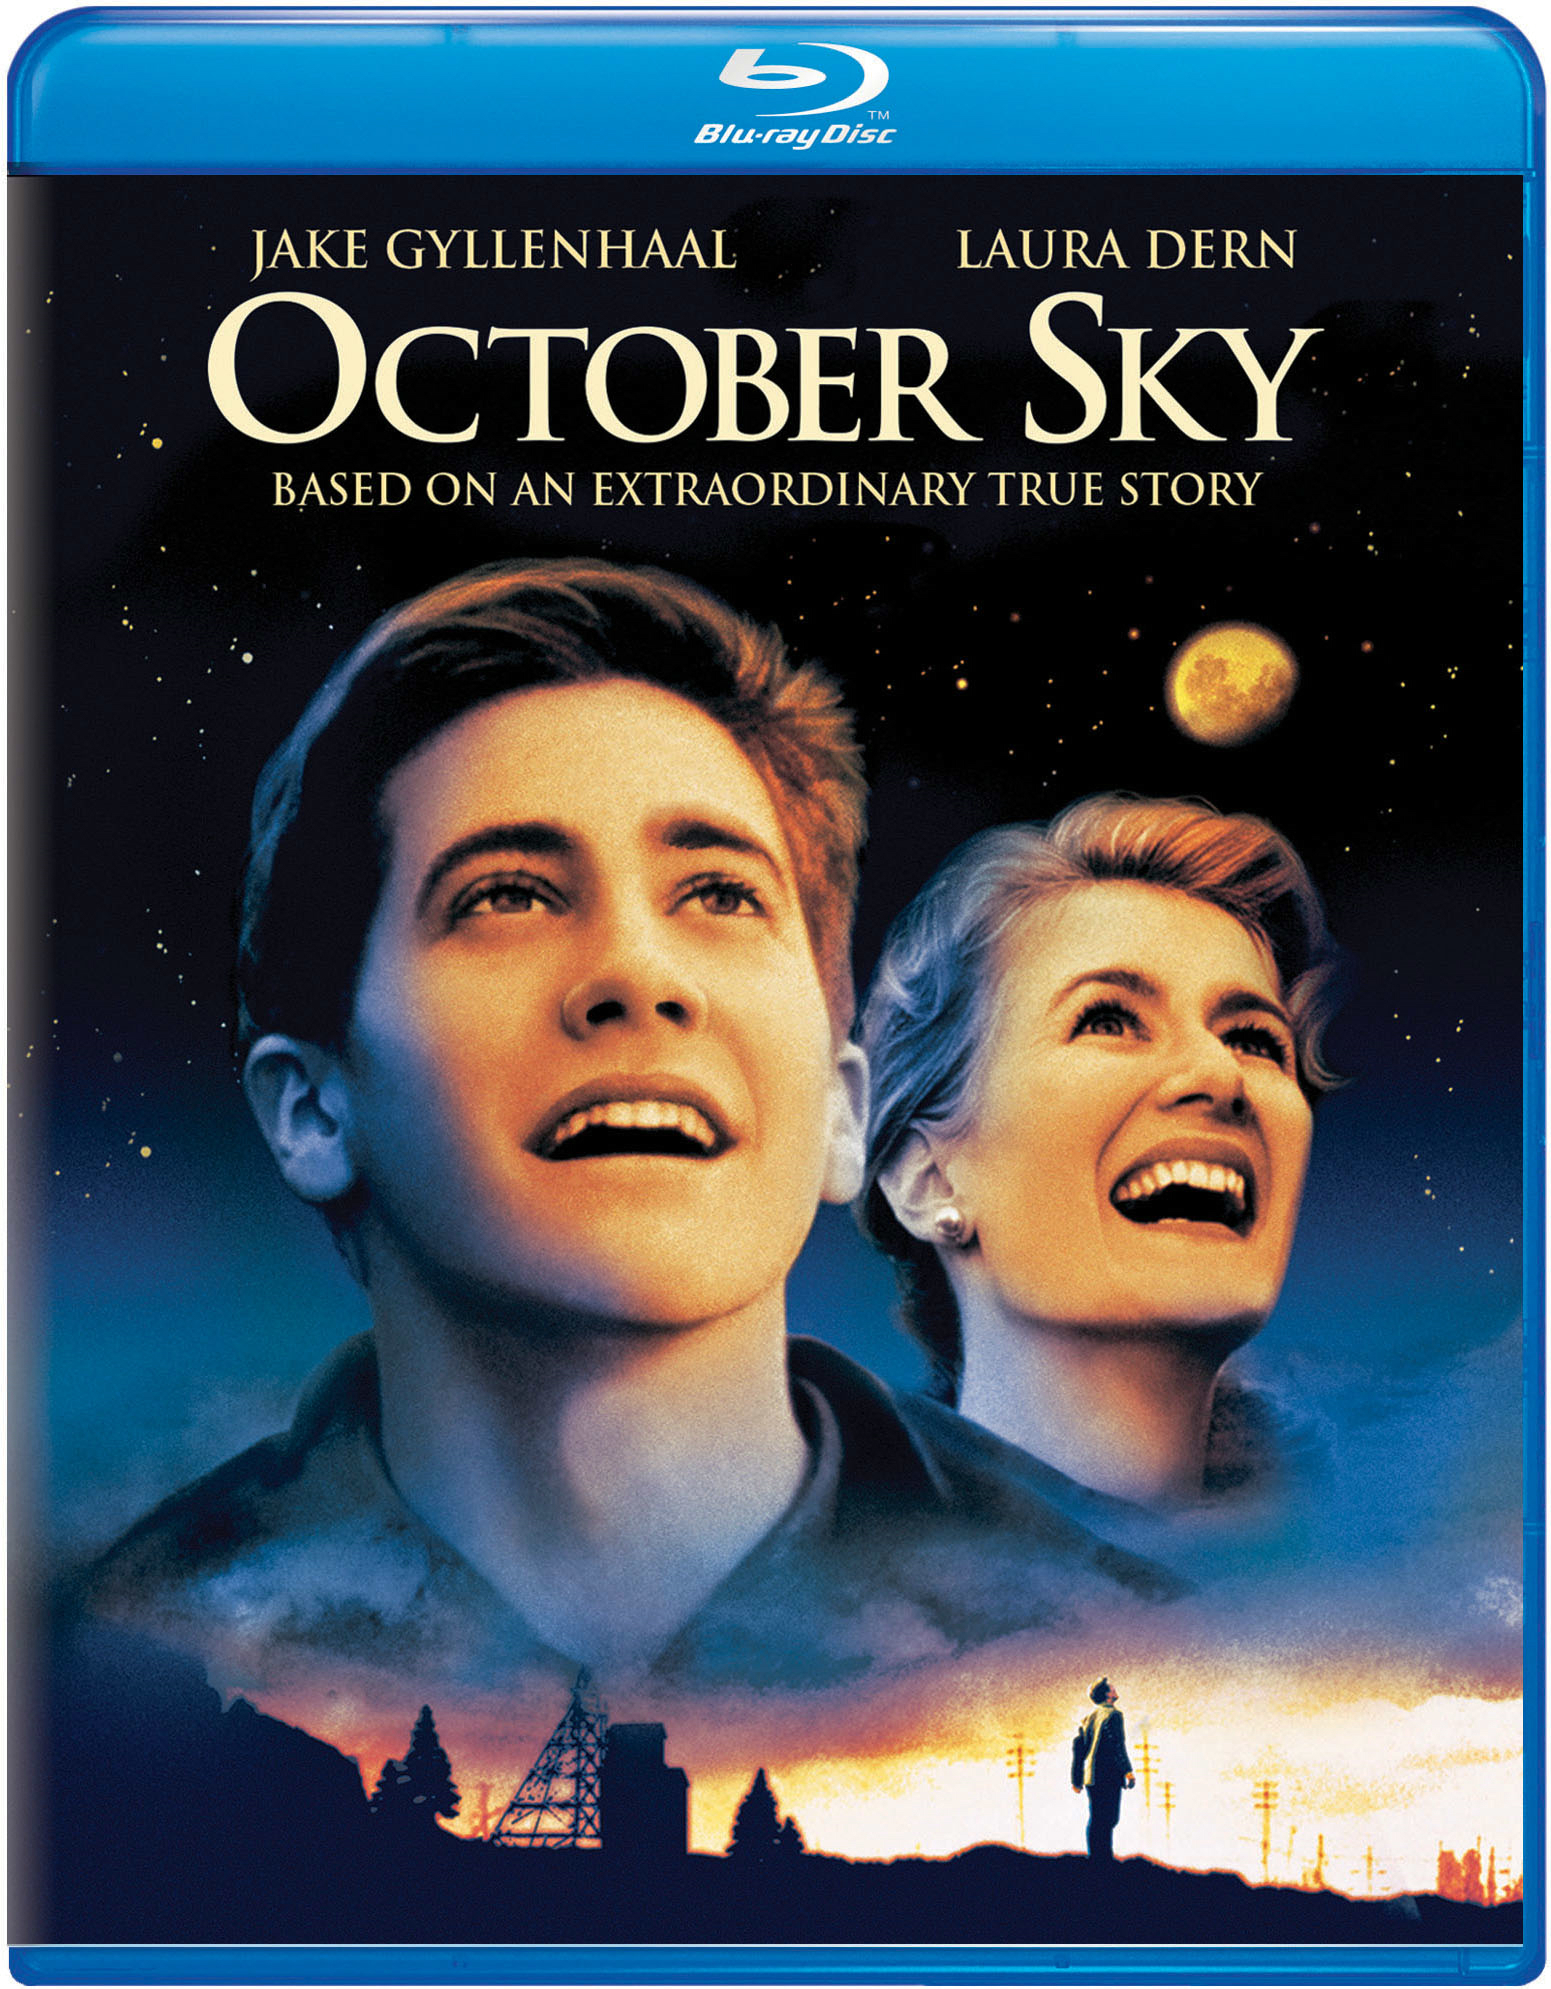 October Sky - Blu-ray [ 1999 ]  - Drama Movies On Blu-ray - Movies On GRUV